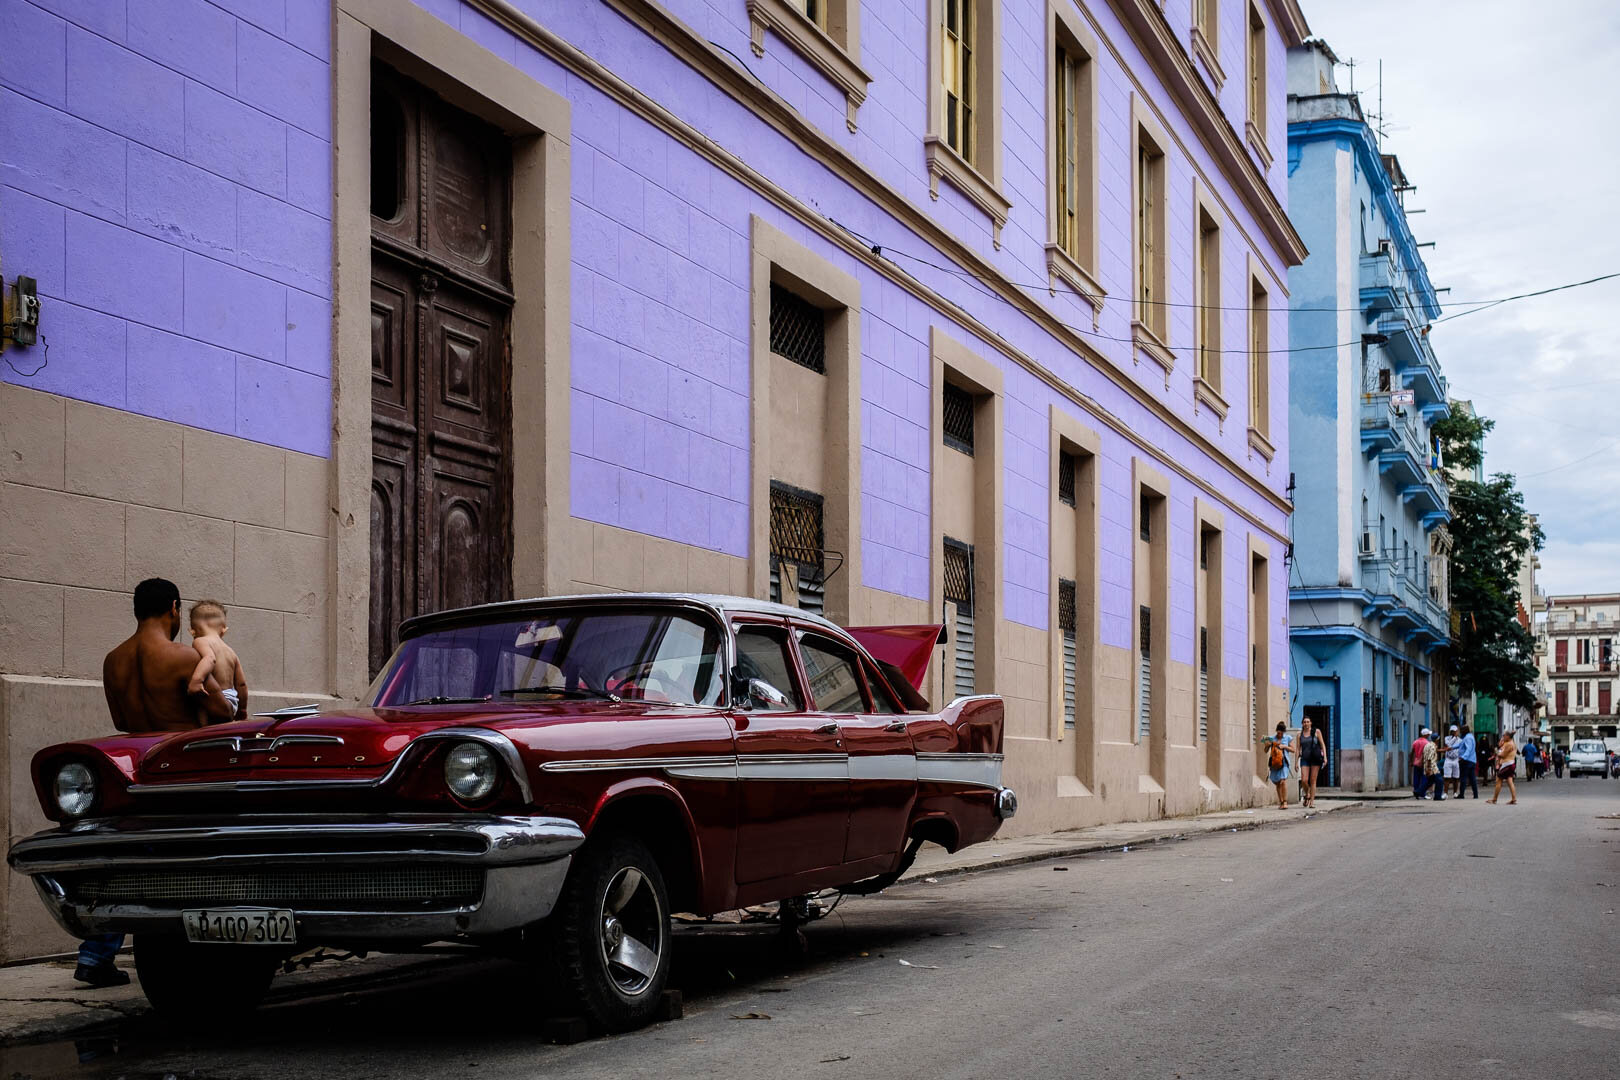 180427-Havana-70-1080.jpg